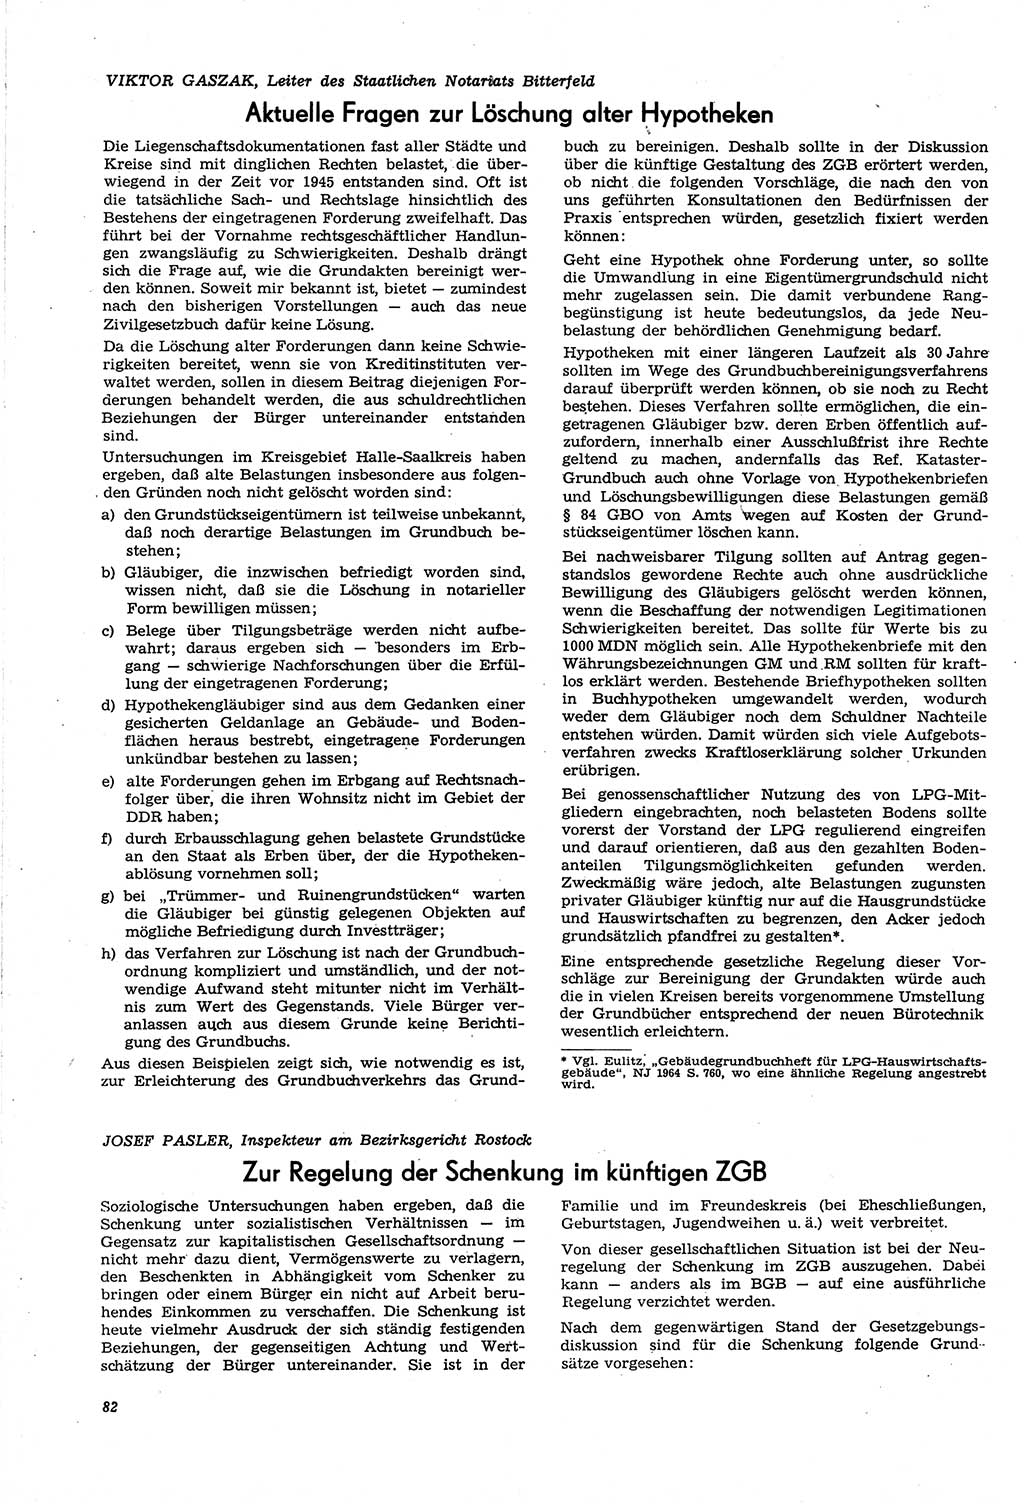 Neue Justiz (NJ), Zeitschrift für Recht und Rechtswissenschaft [Deutsche Demokratische Republik (DDR)], 21. Jahrgang 1967, Seite 82 (NJ DDR 1967, S. 82)